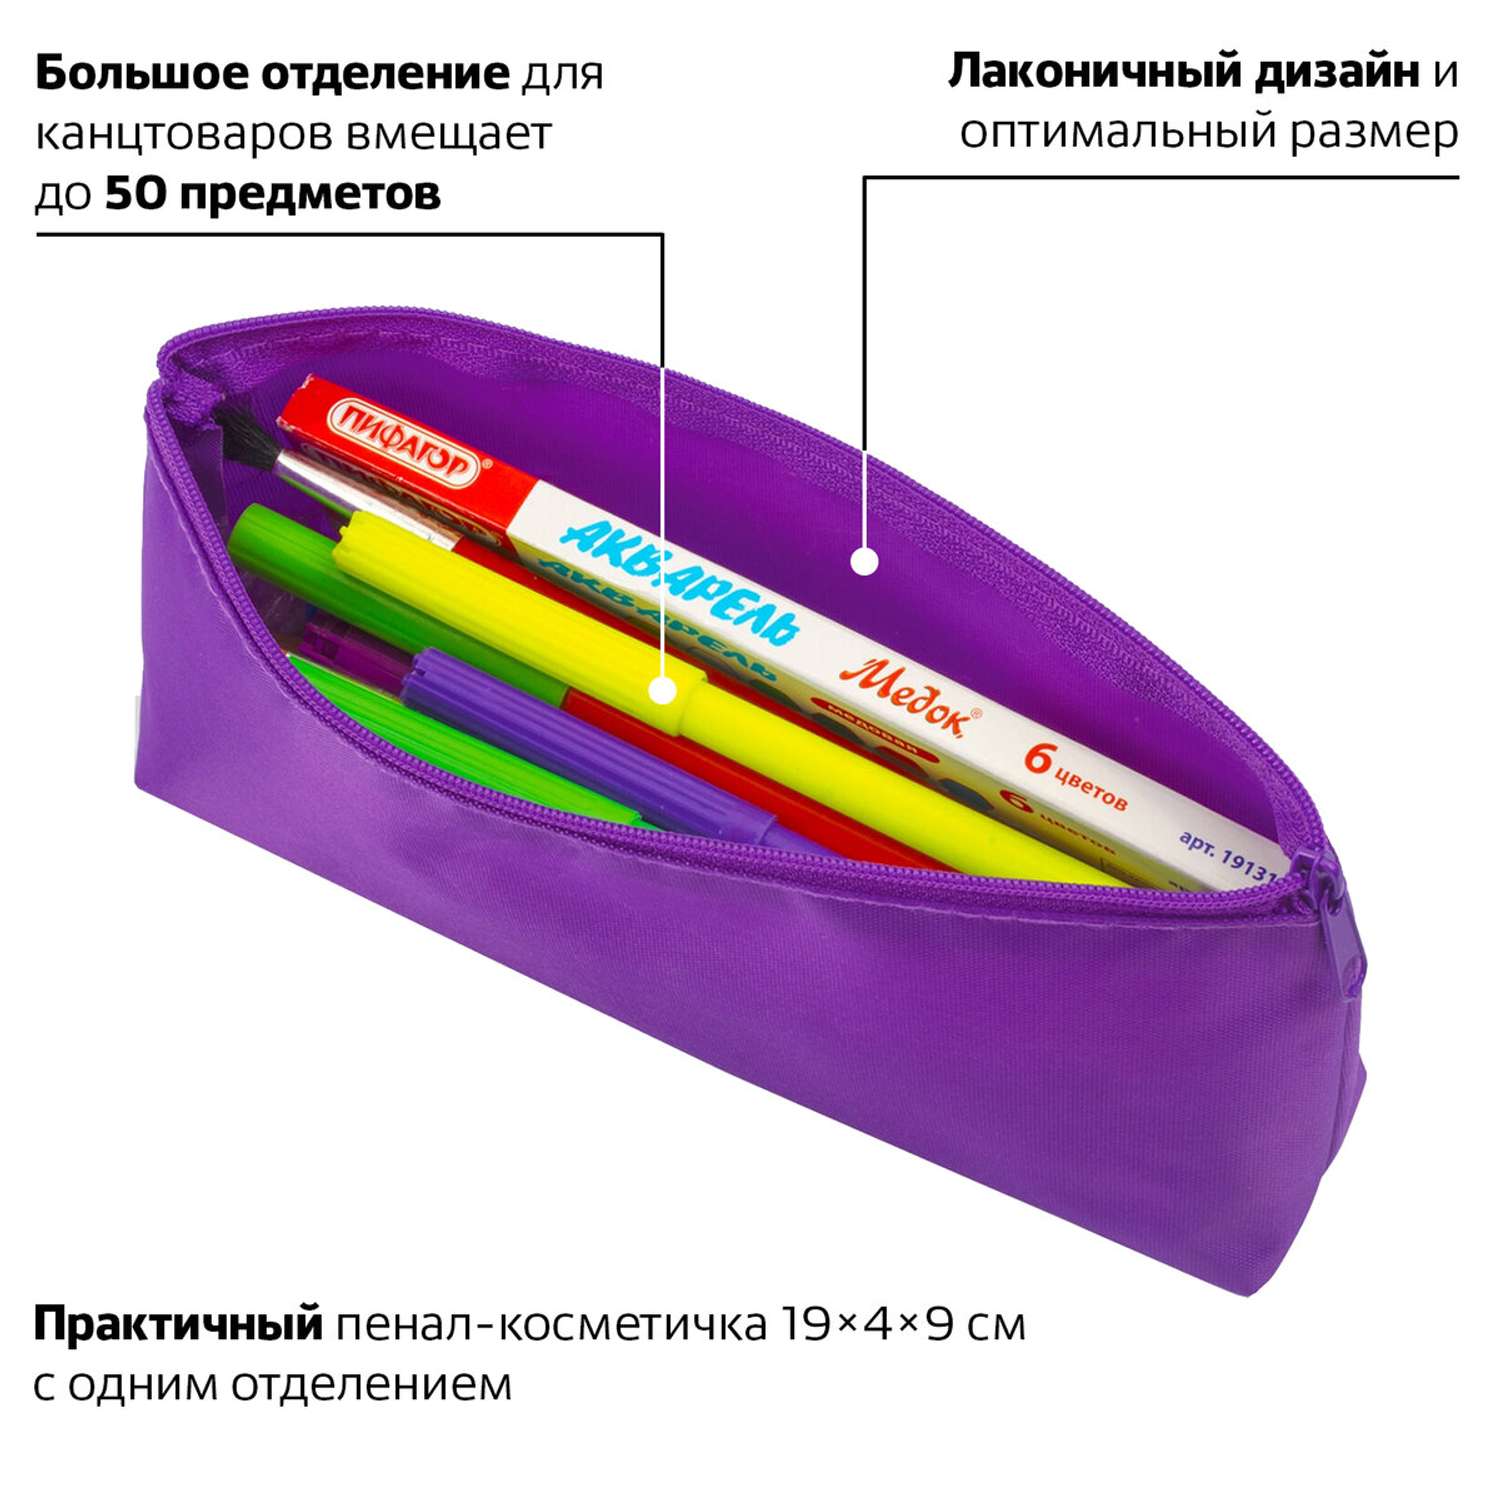 Пенал-косметичка Пифагор тубус школьный для ручек карандашей мягкий - фото 2